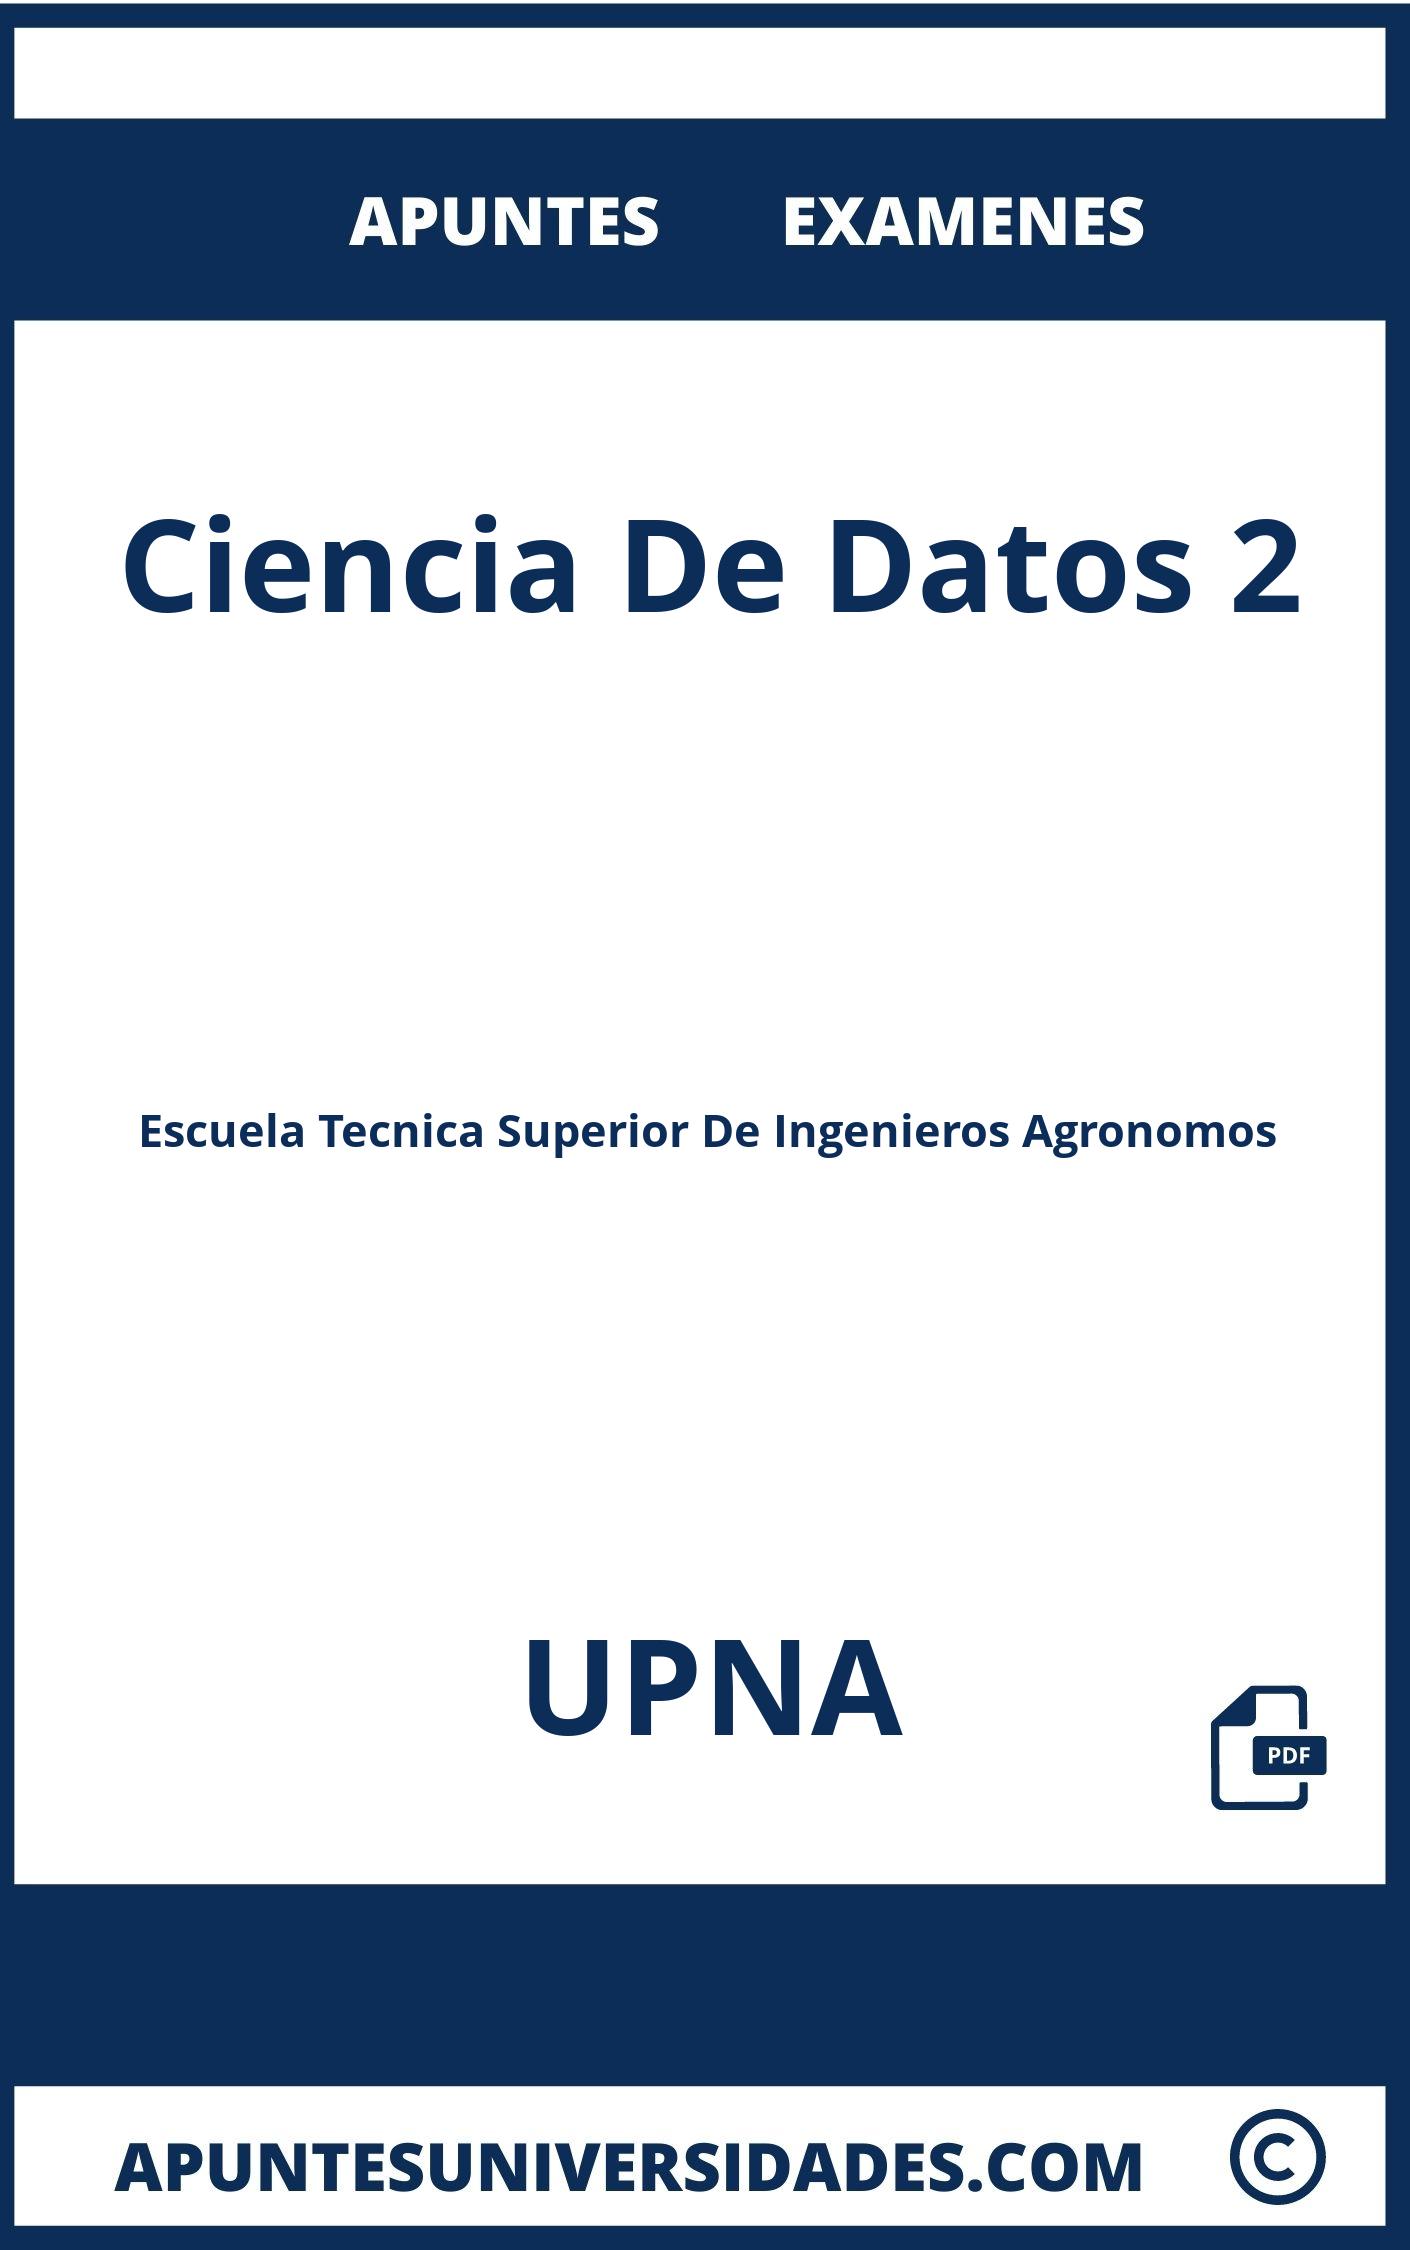 Examenes y Apuntes Ciencia De Datos 2 UPNA